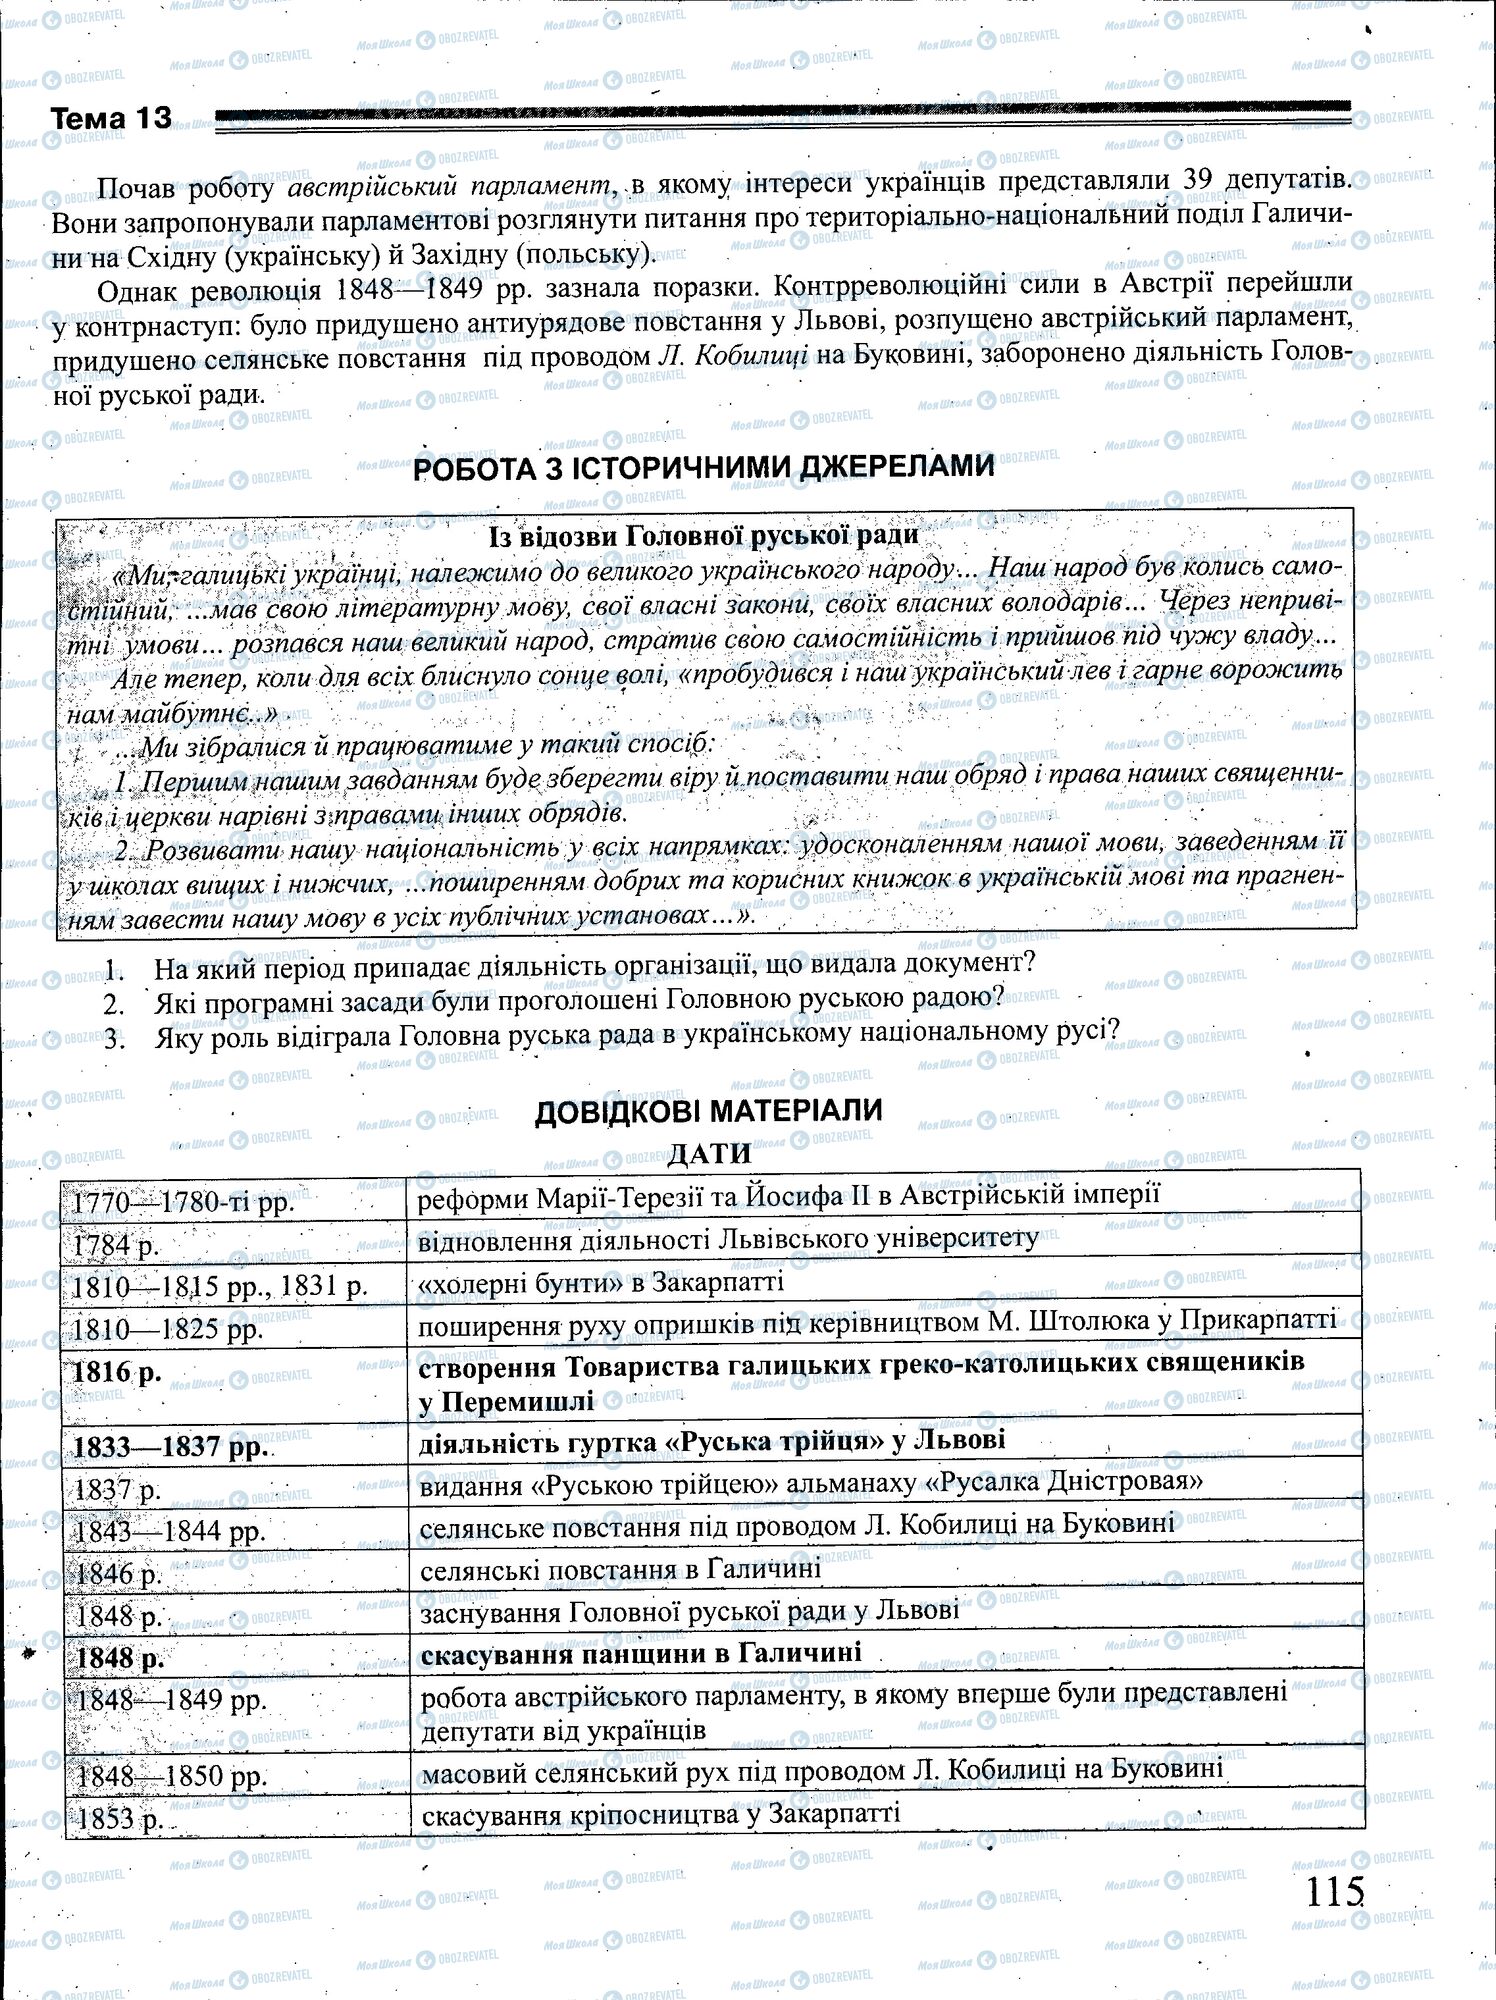 ЗНО История Украины 11 класс страница 115